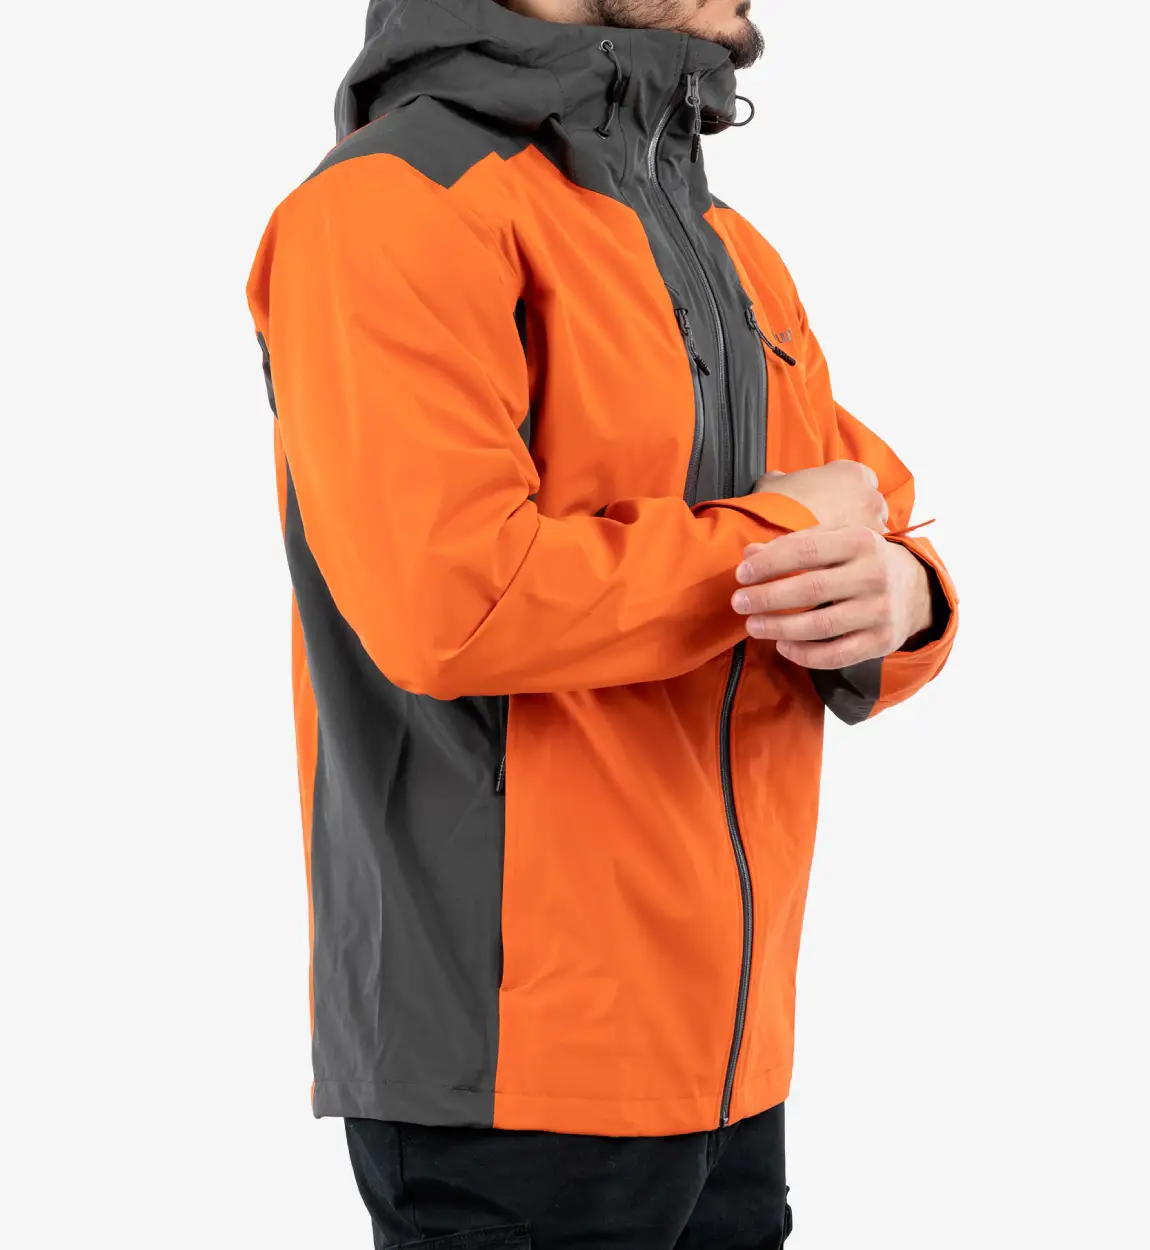 Peak_Creak_waterproof_jacket (2)